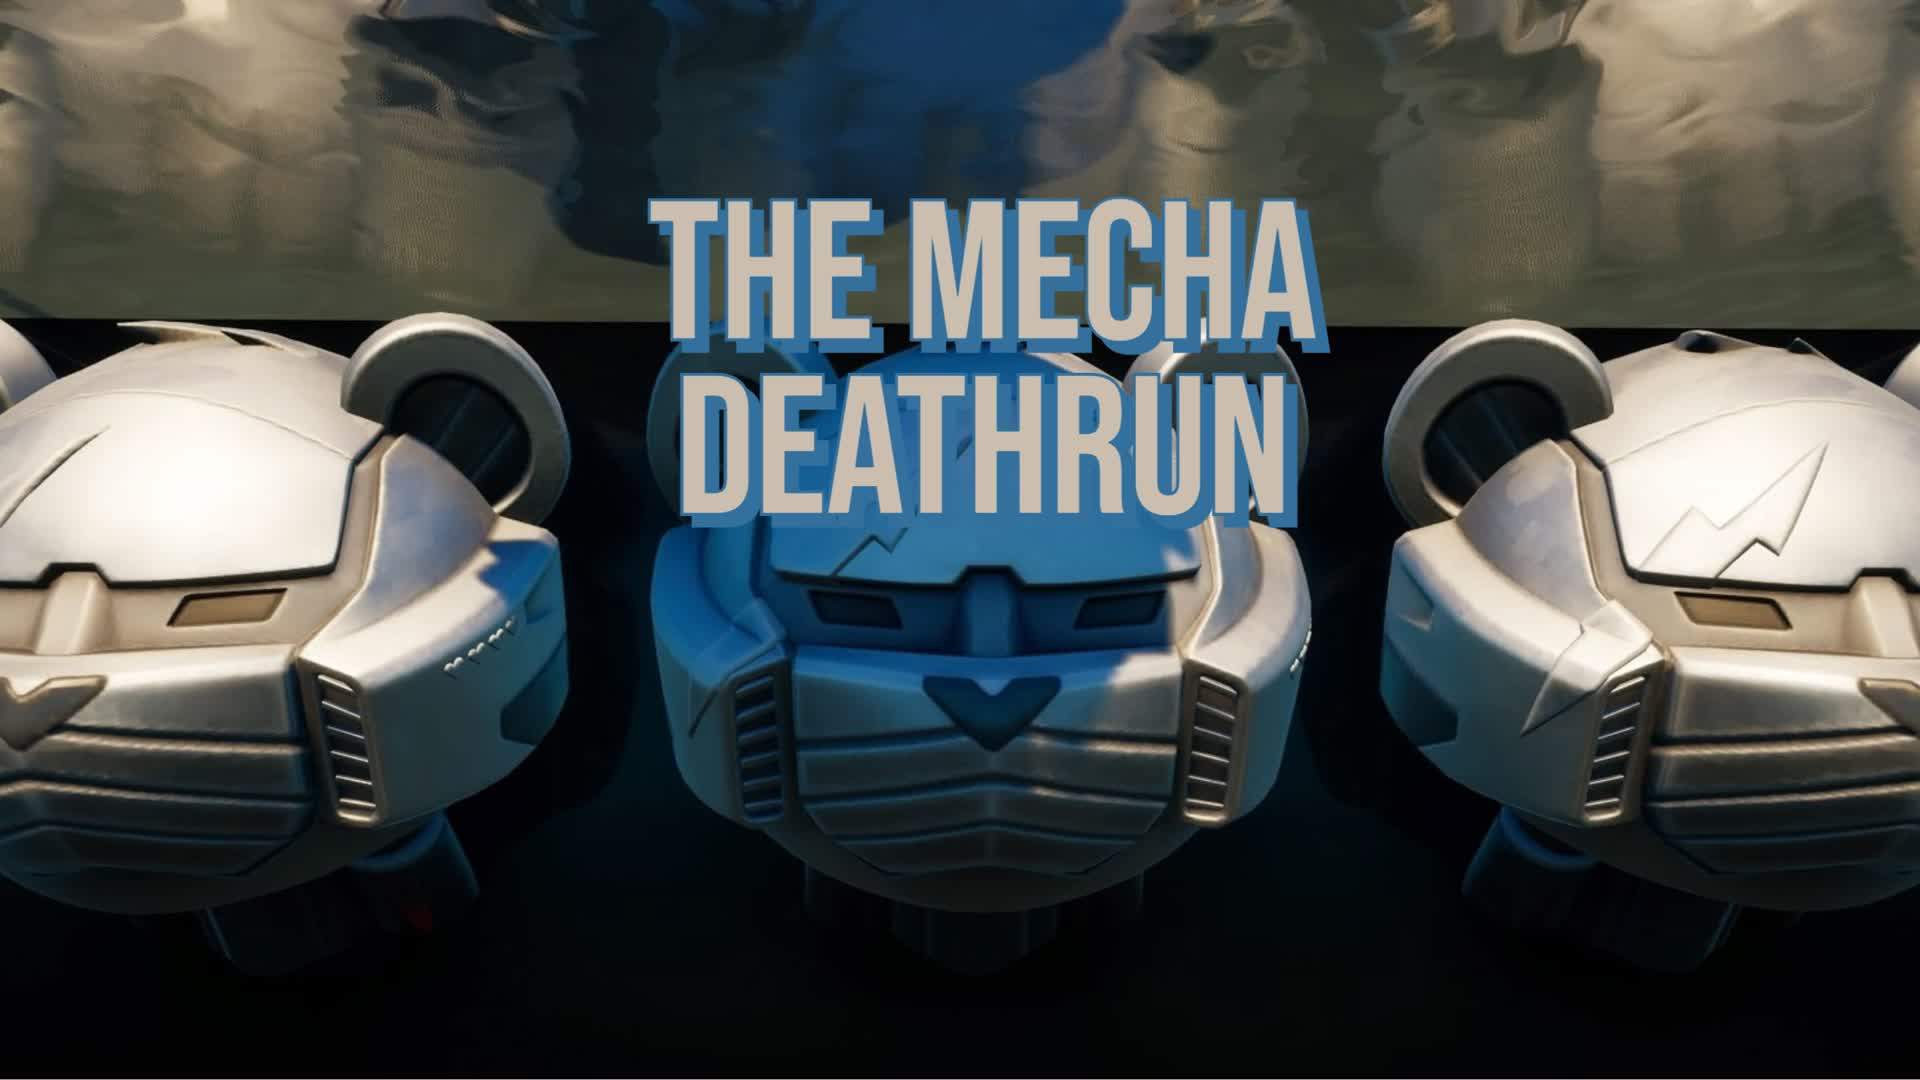 The mecha deathrun